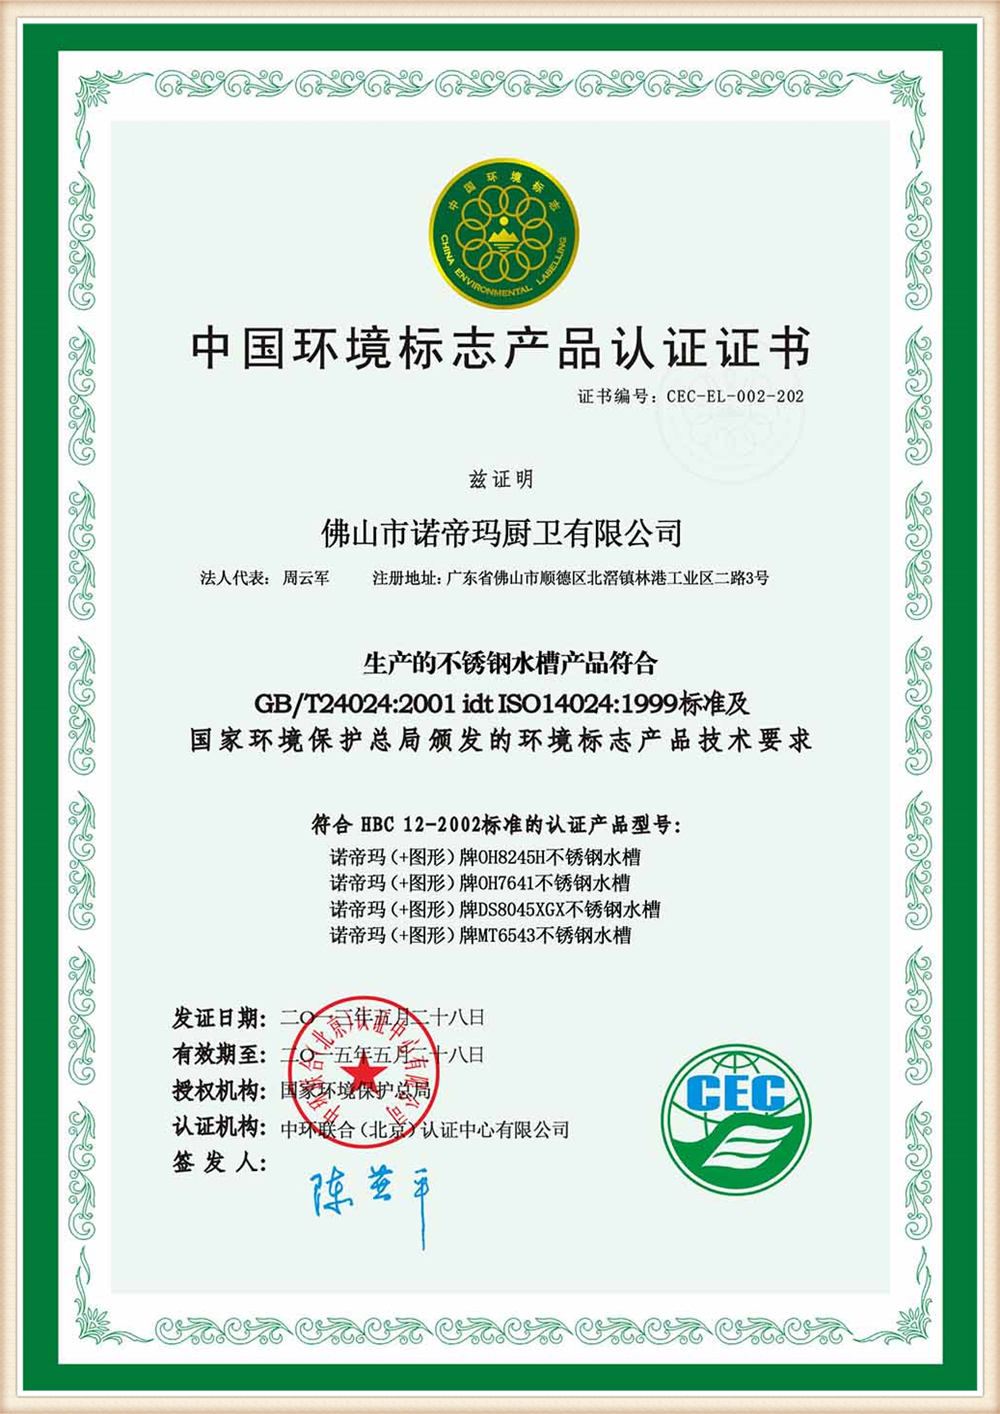 certificate-02